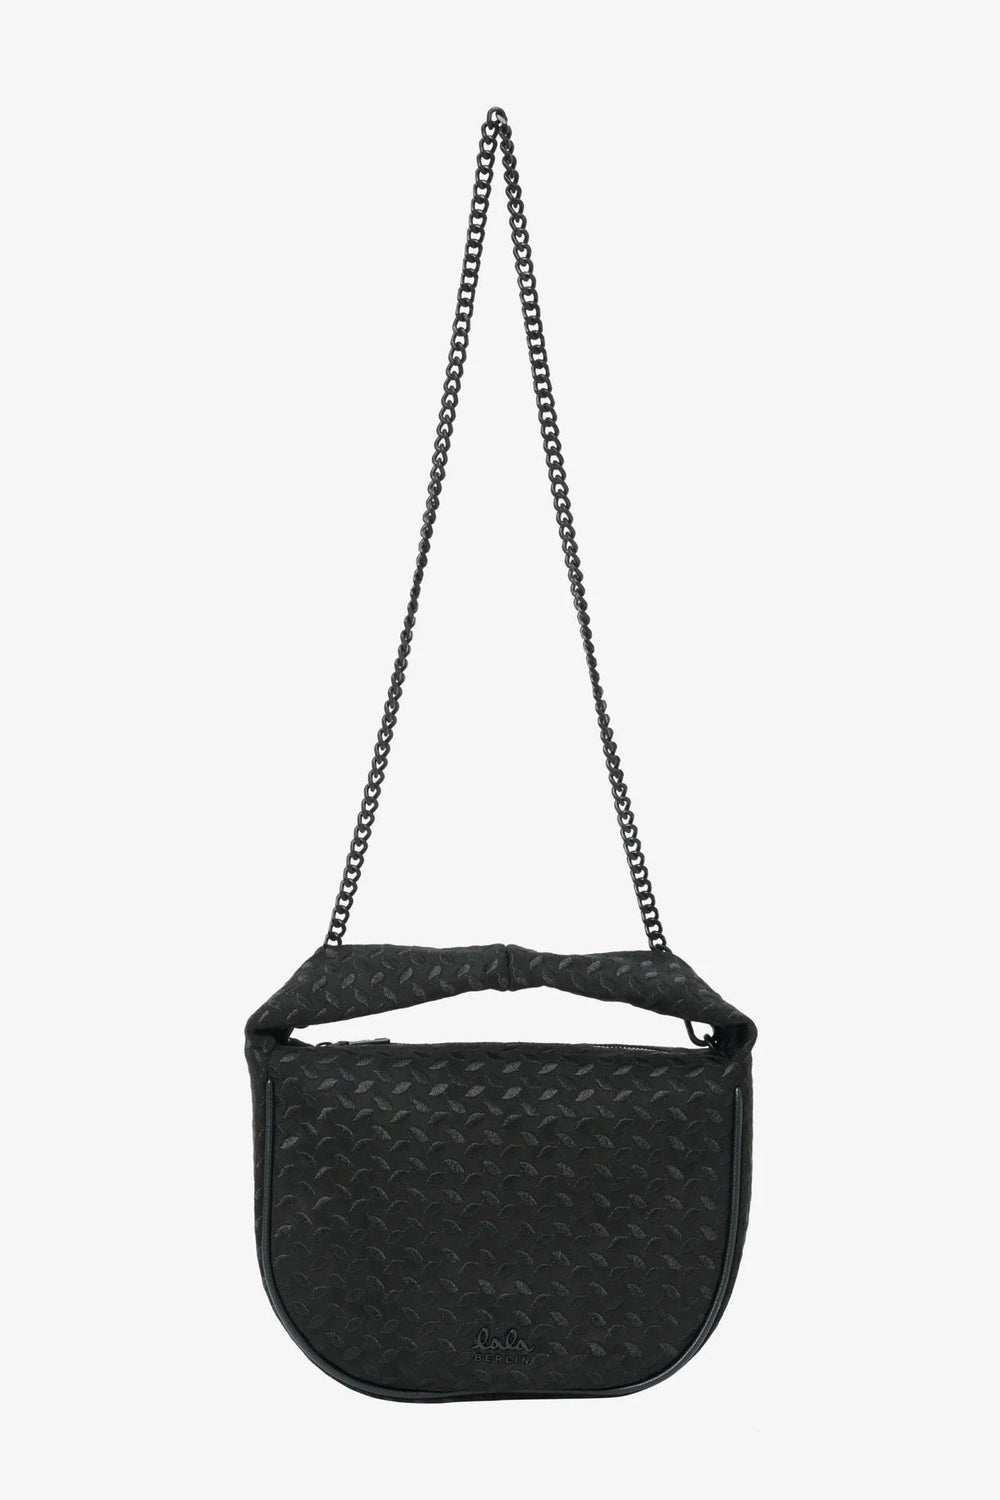 LALA BERLIN Small Handbag Merve, heritage suede black